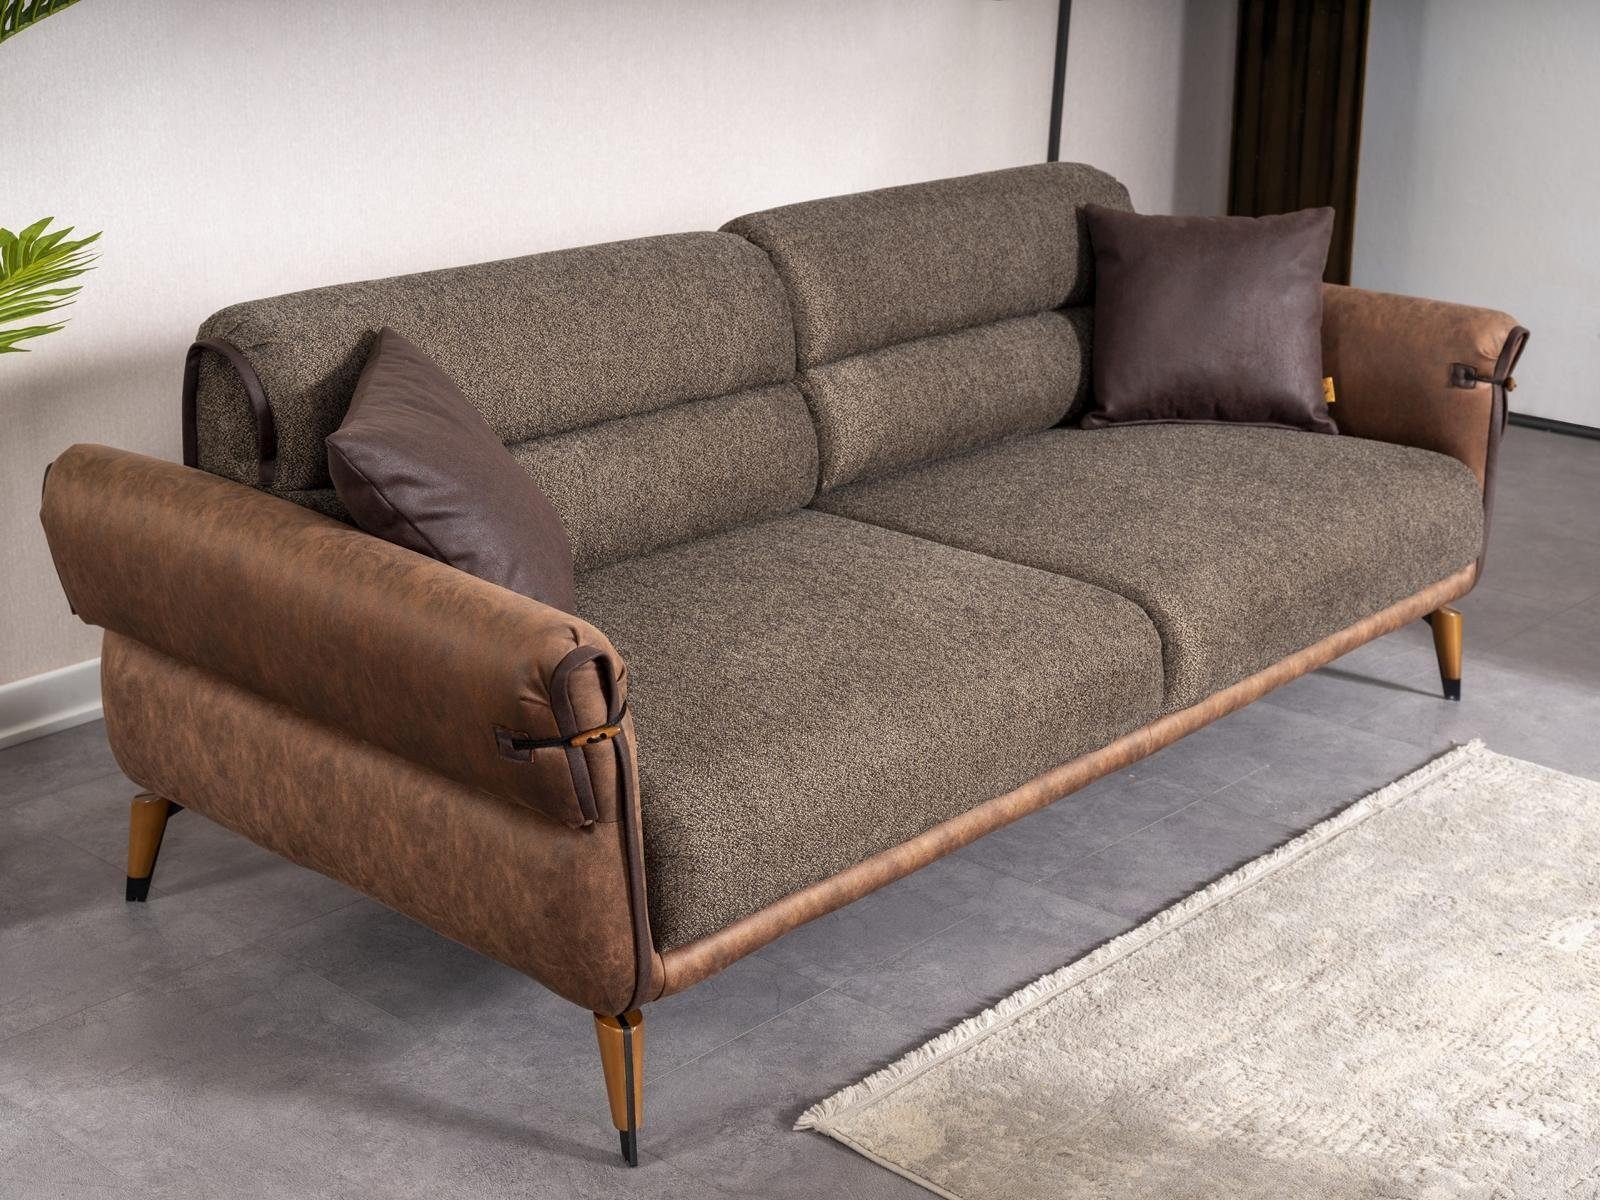 JVmoebel Sofa Braun Sofa Zweisitzer Wohnzimmer Polstermöbel Couch Neu Einrichtung, 1 Teile, Made in Europa